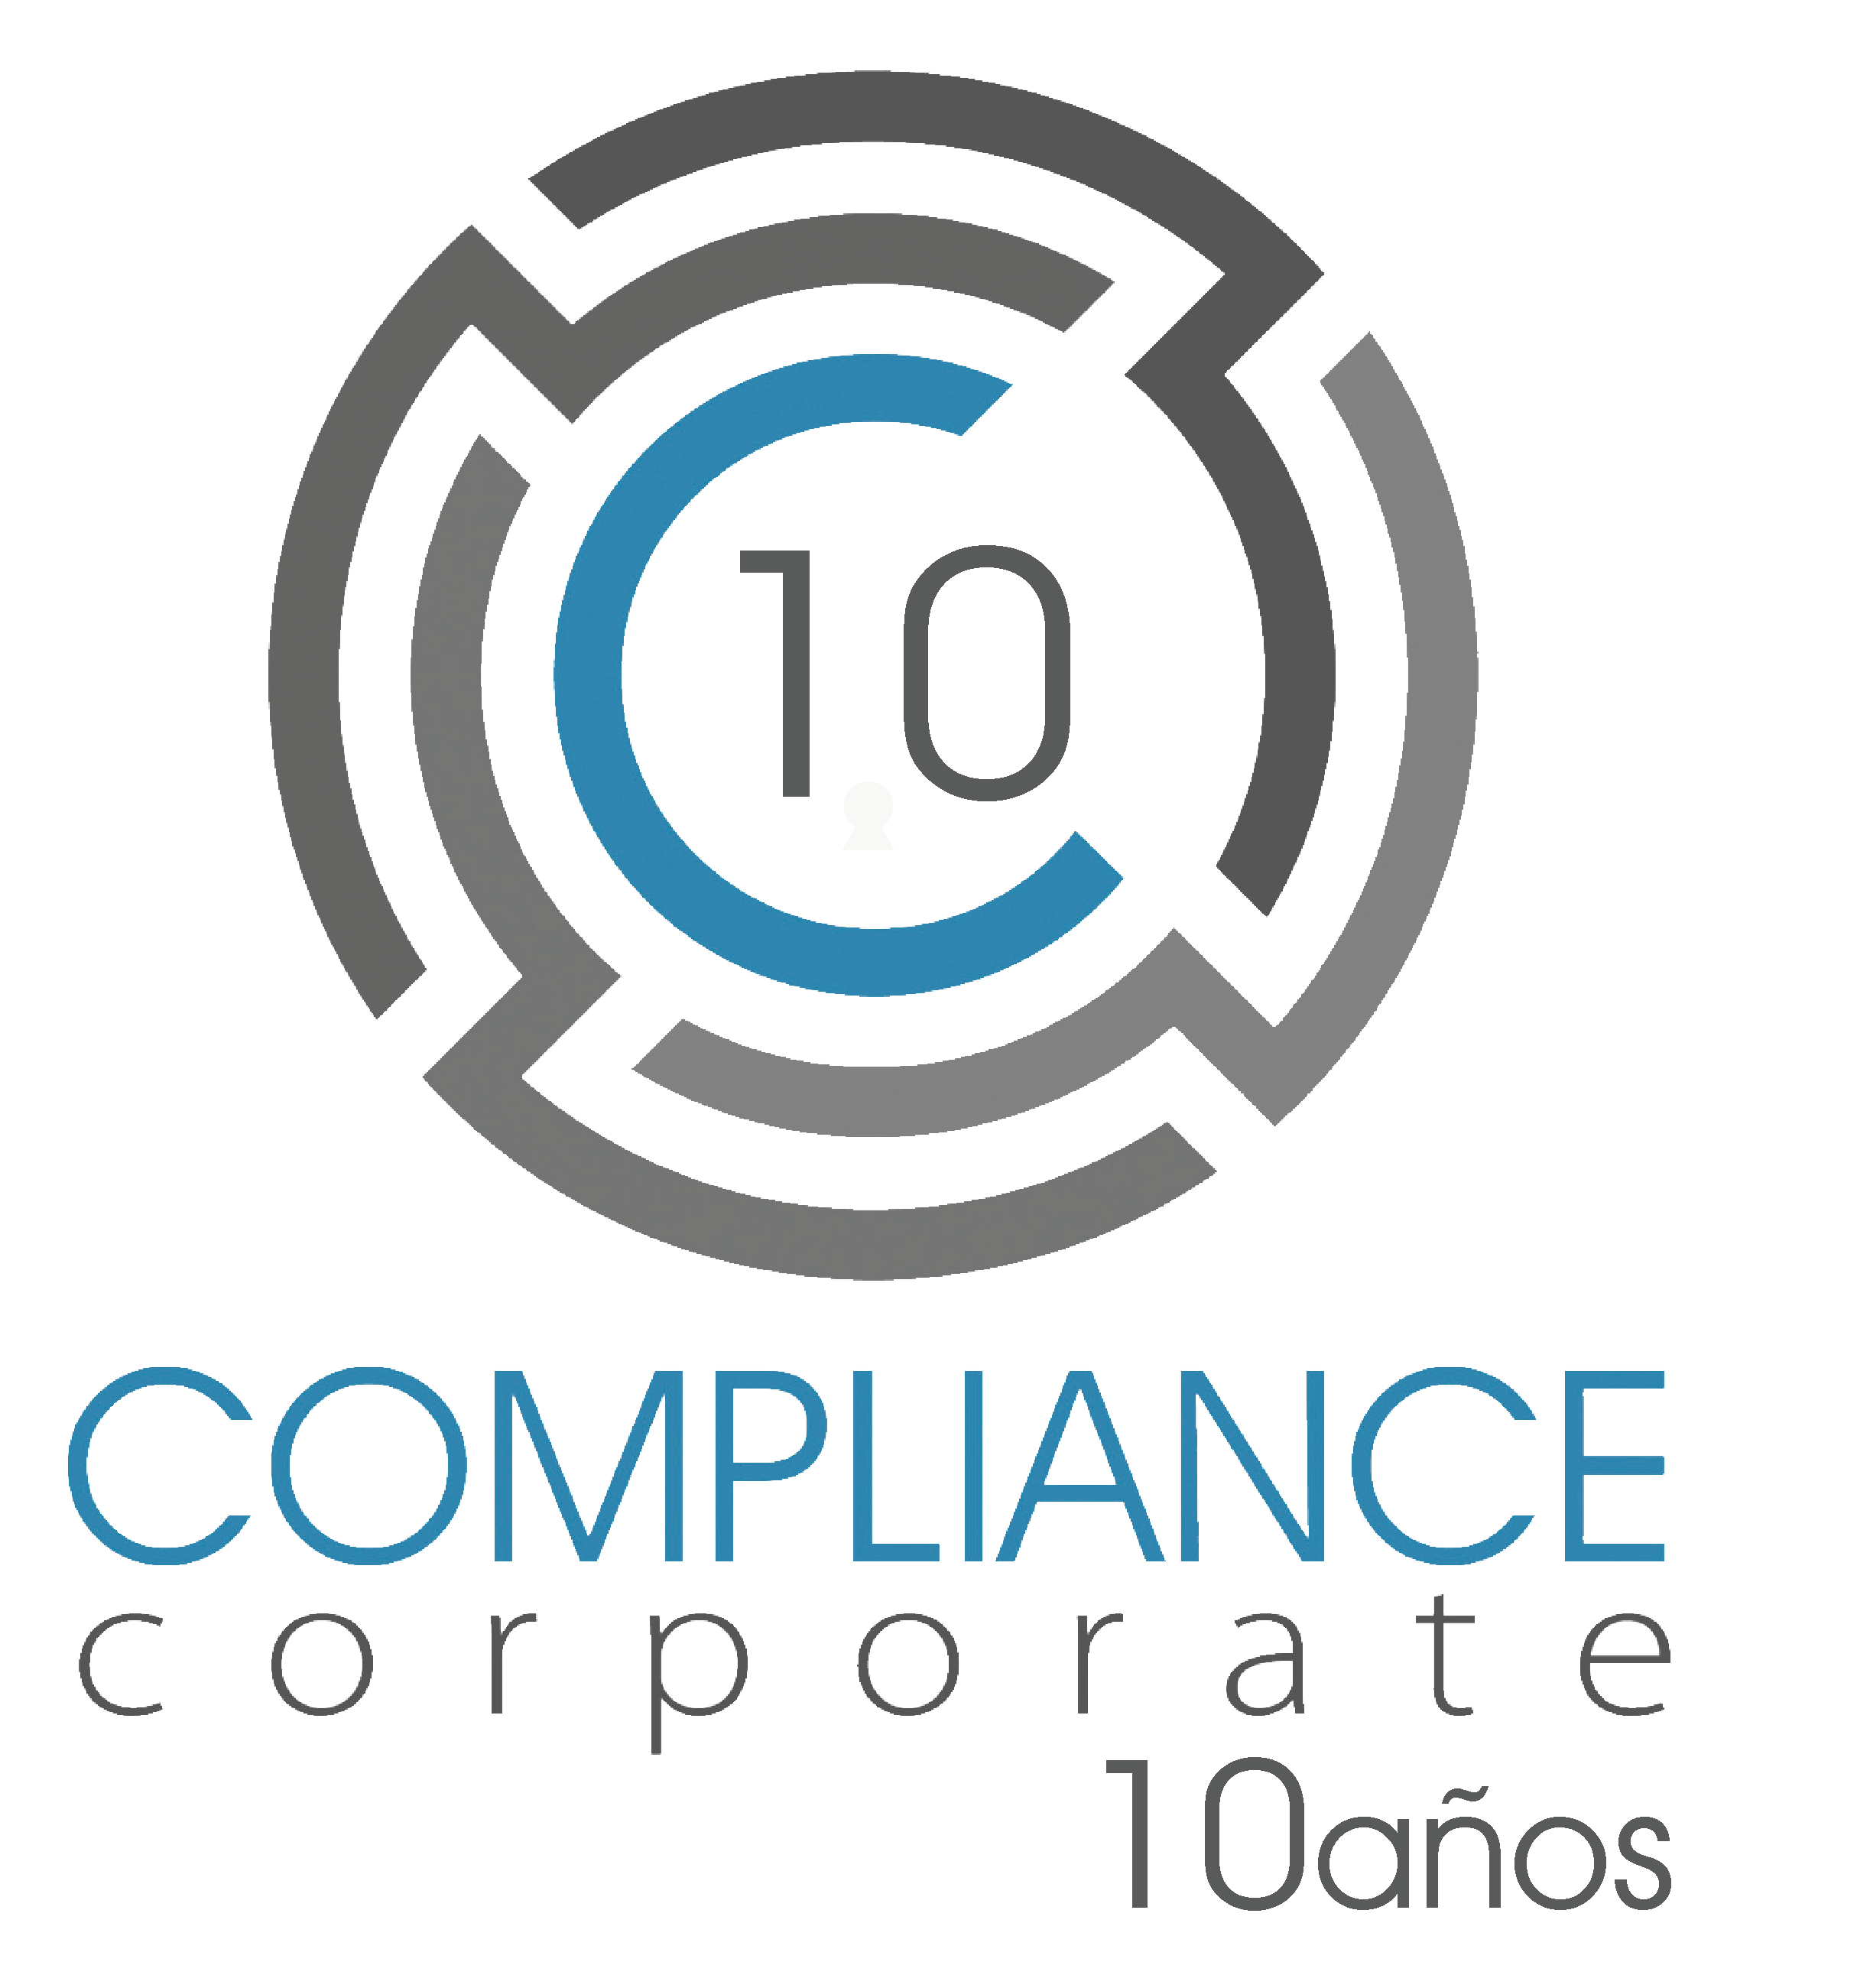 Compliance Corporate